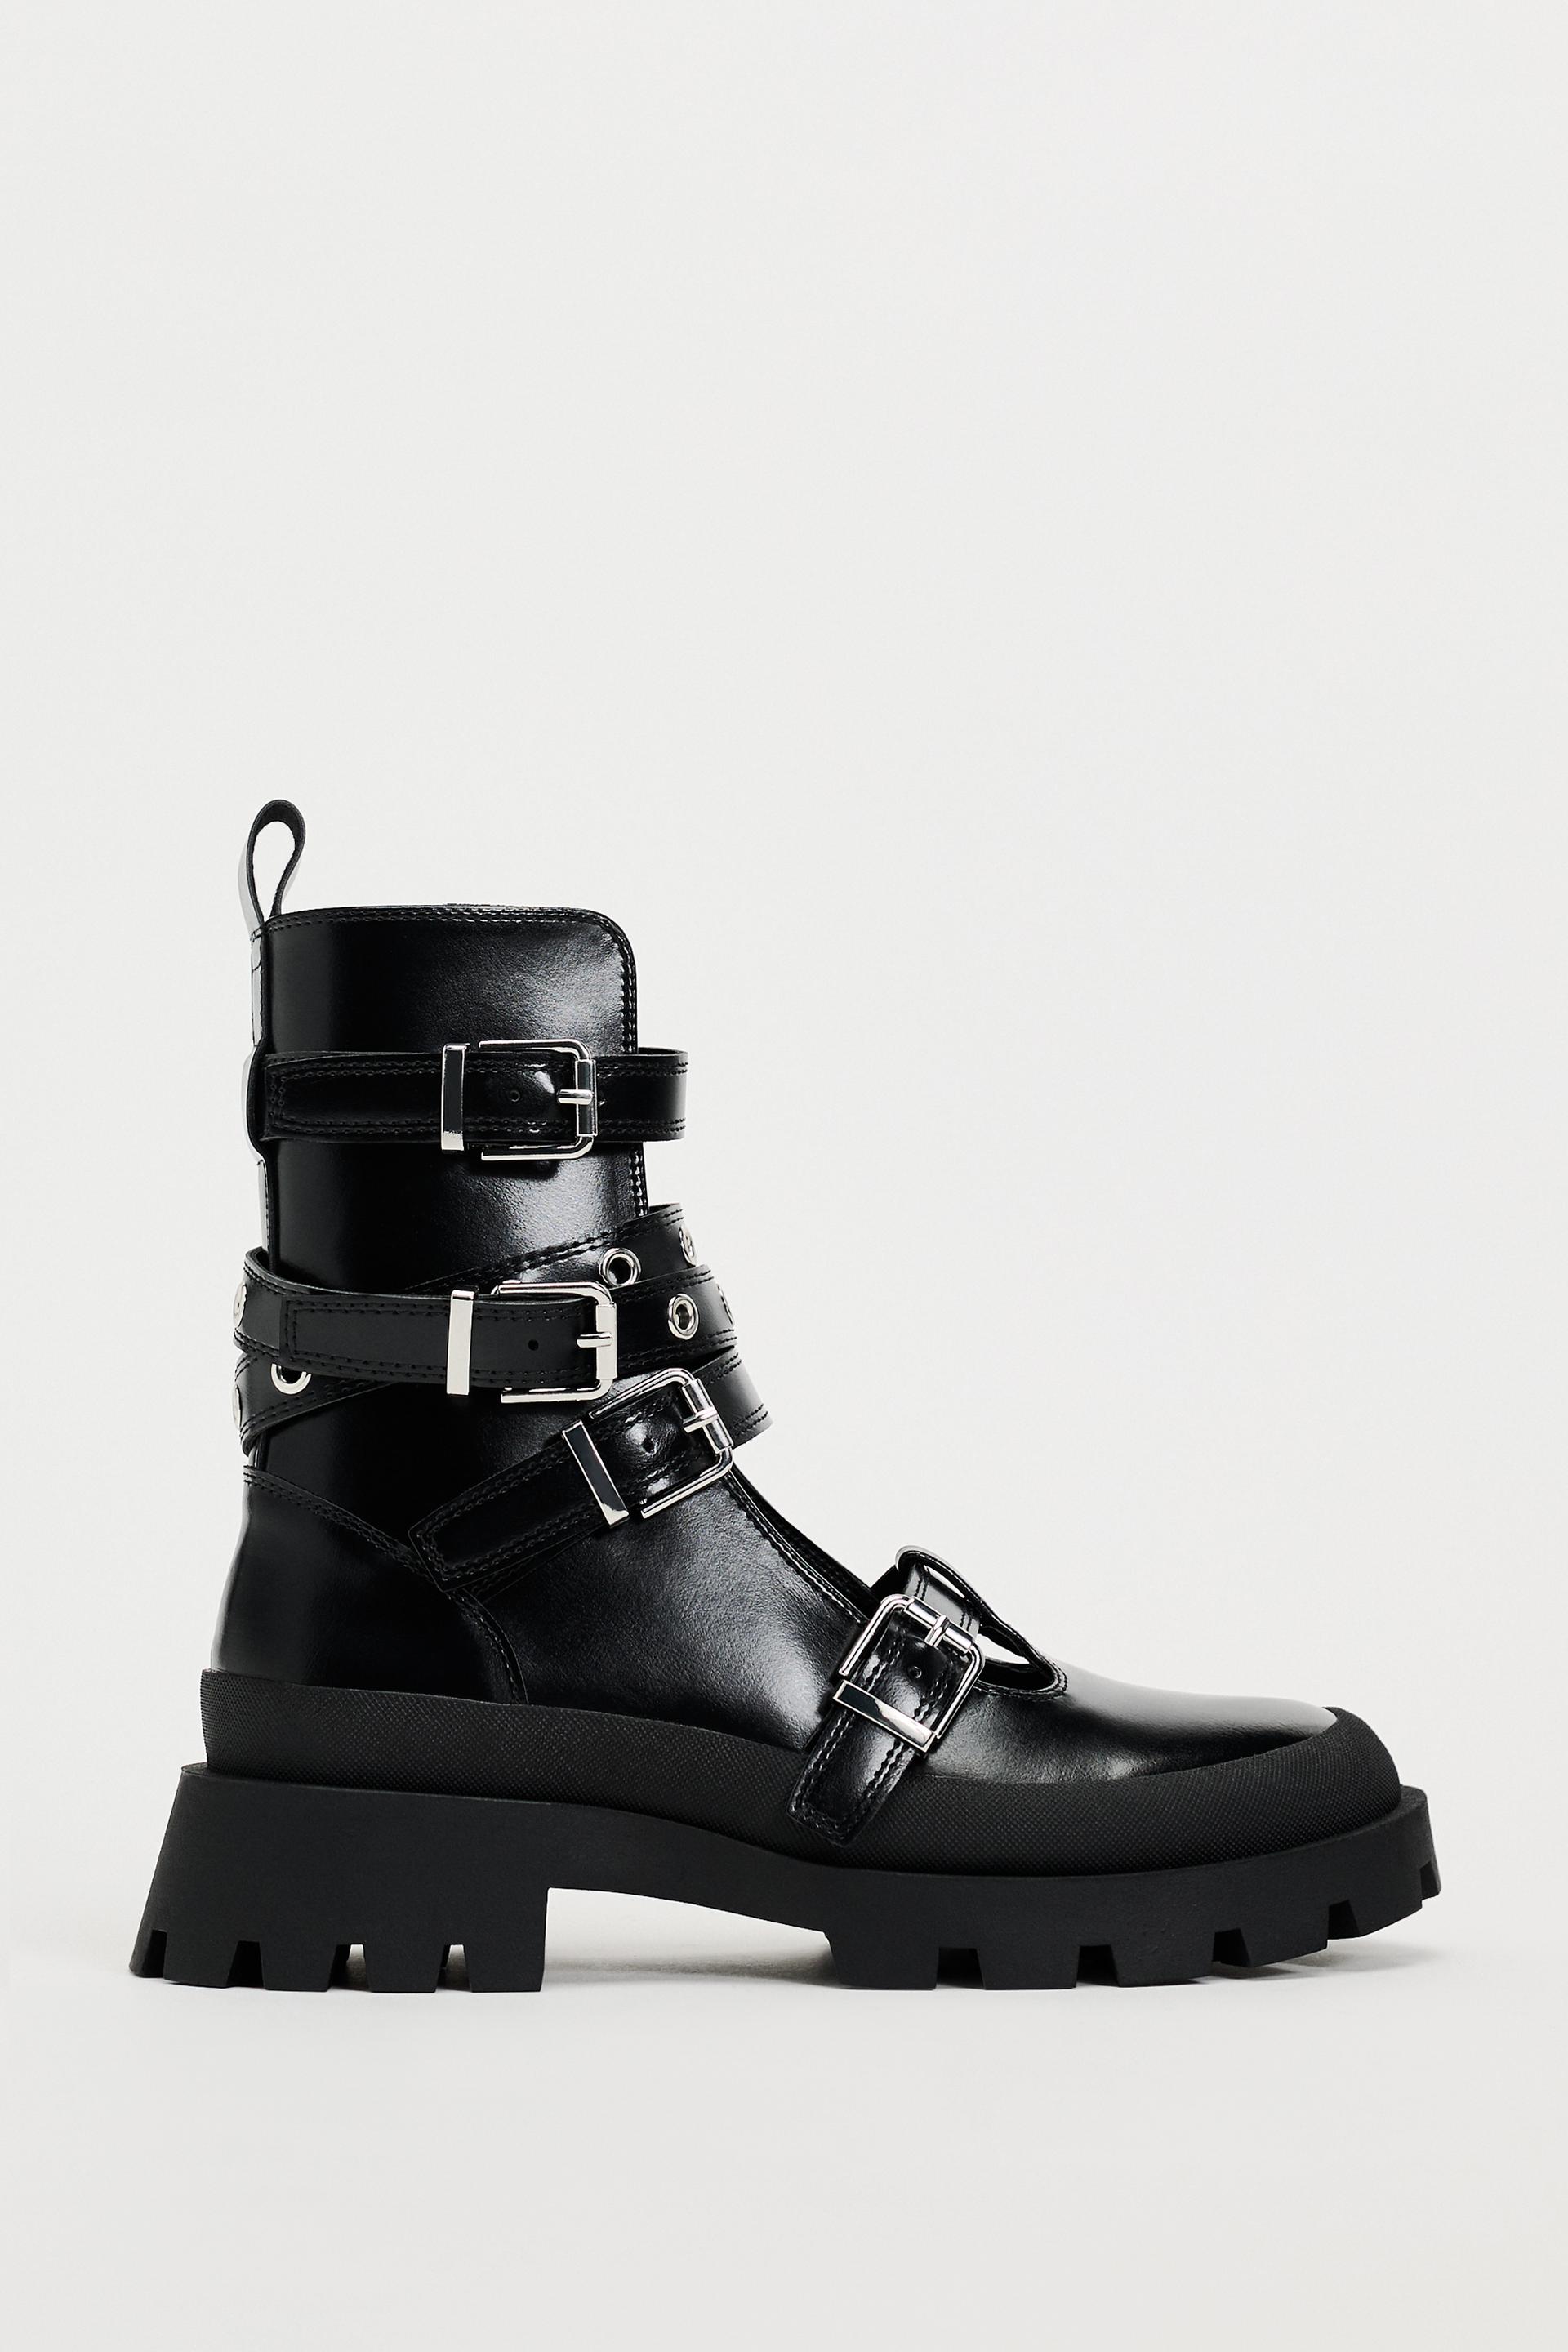 NEW Zara Black Mid Calf Boots Sz 6.5-7 Winter/Fall 2052/811 riding tall  buckle